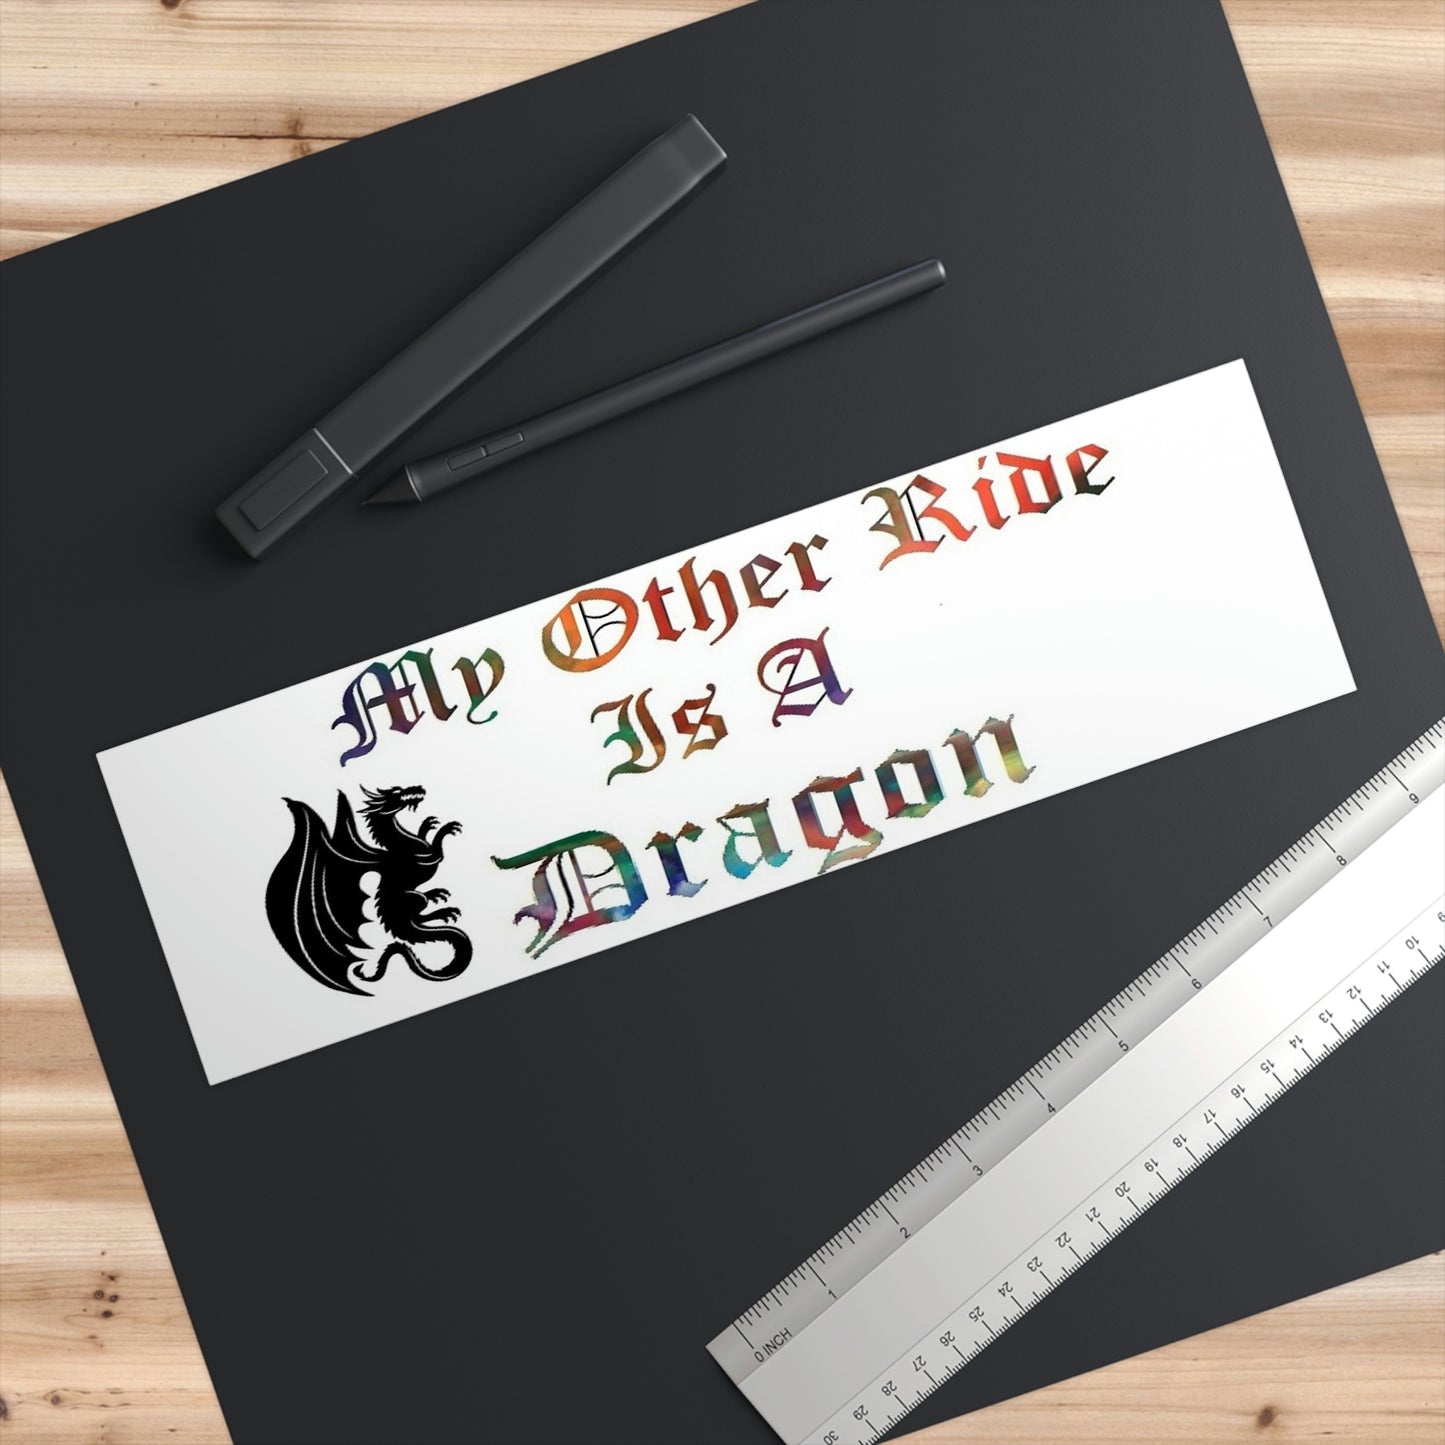 Dragon Riders Bumper Sticker